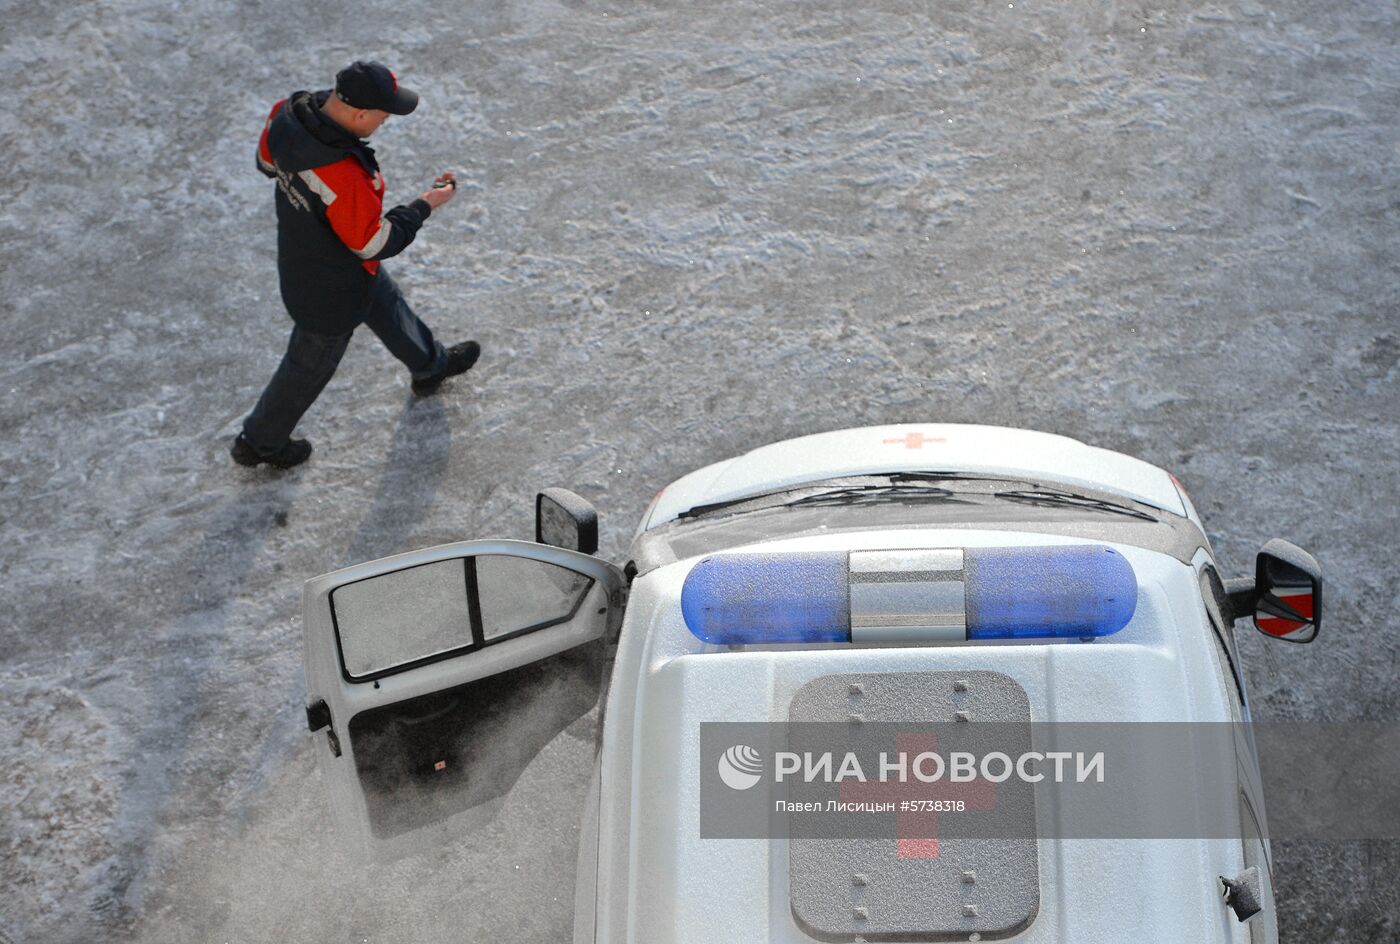 Вручение автомобилей скорой медицинской помощи учреждениям здравоохранения Свердловской области